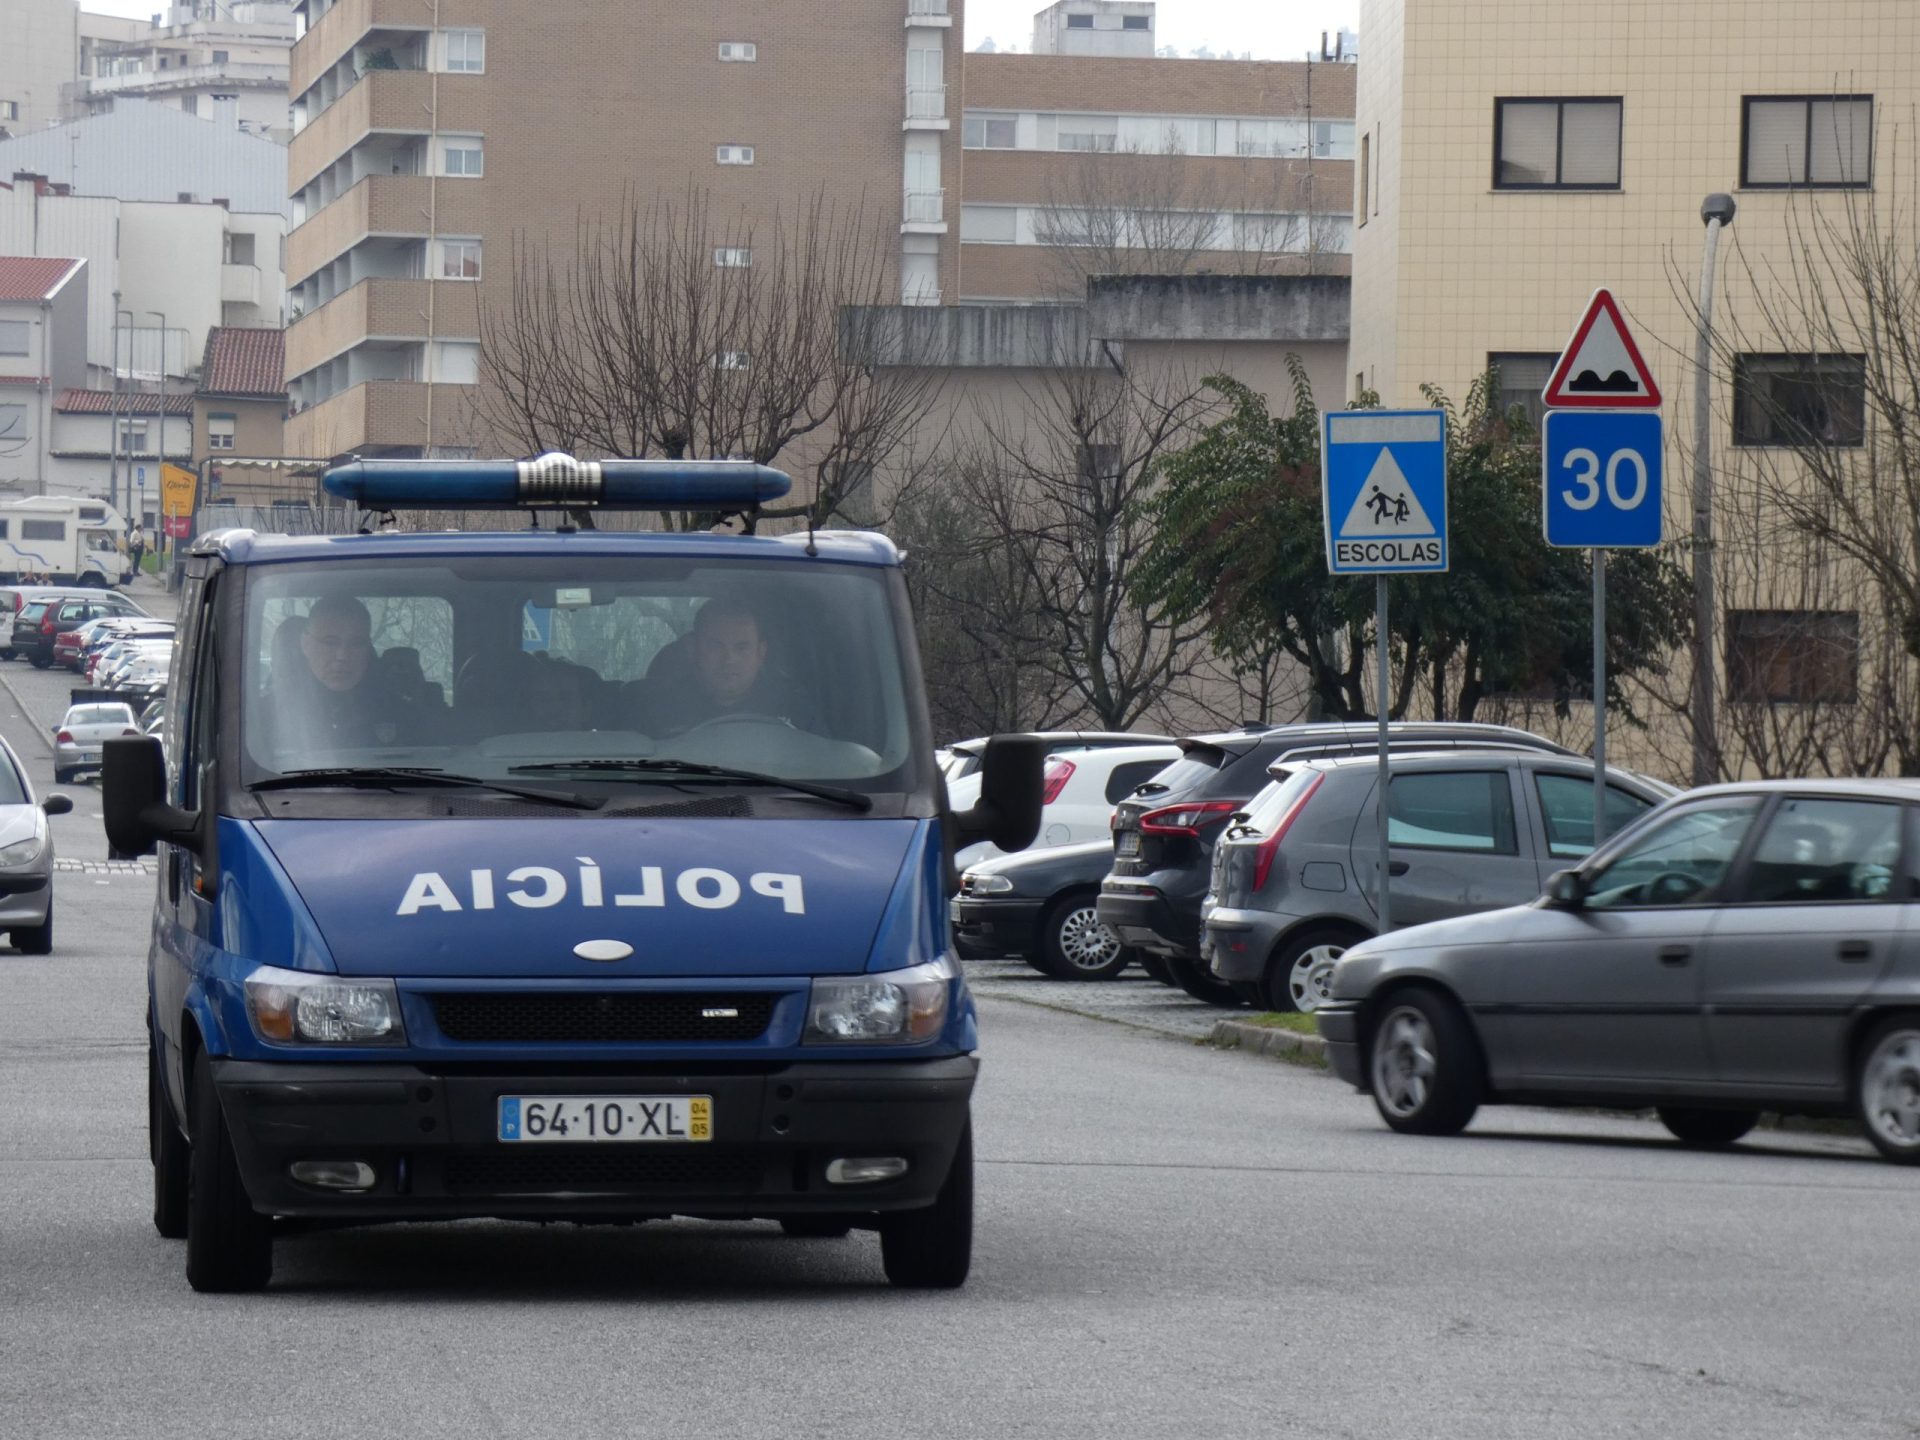 Agente da PSP arrisca vida para salvar mulher de 78 anos em Braga